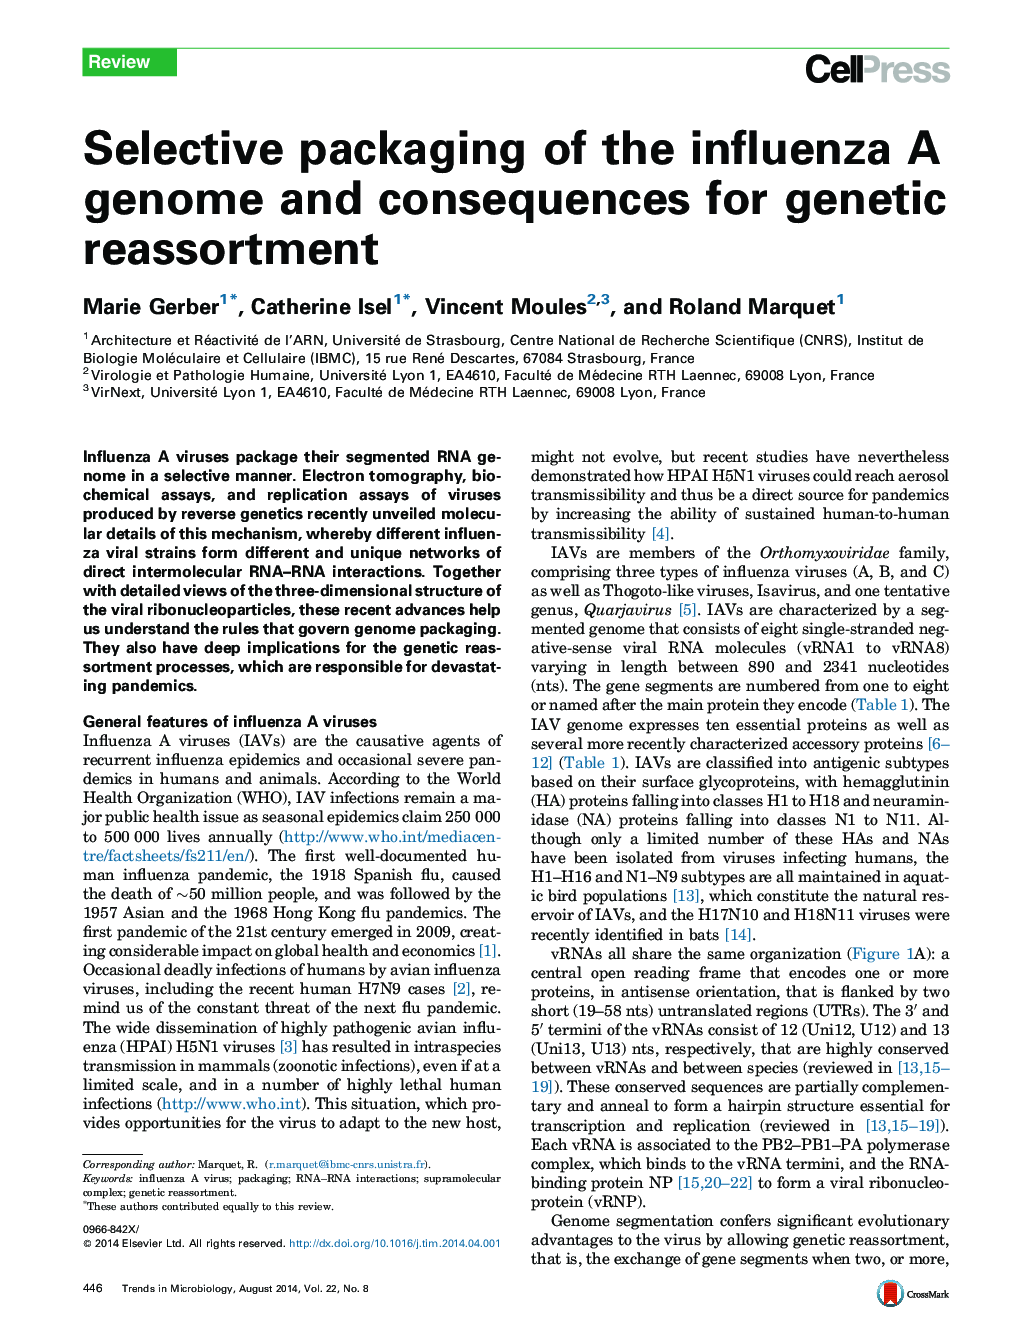 بسته بندی انتخابی ژنوم آنفلوآنزا و عواقب آن برای تربیت ژنتیکی 